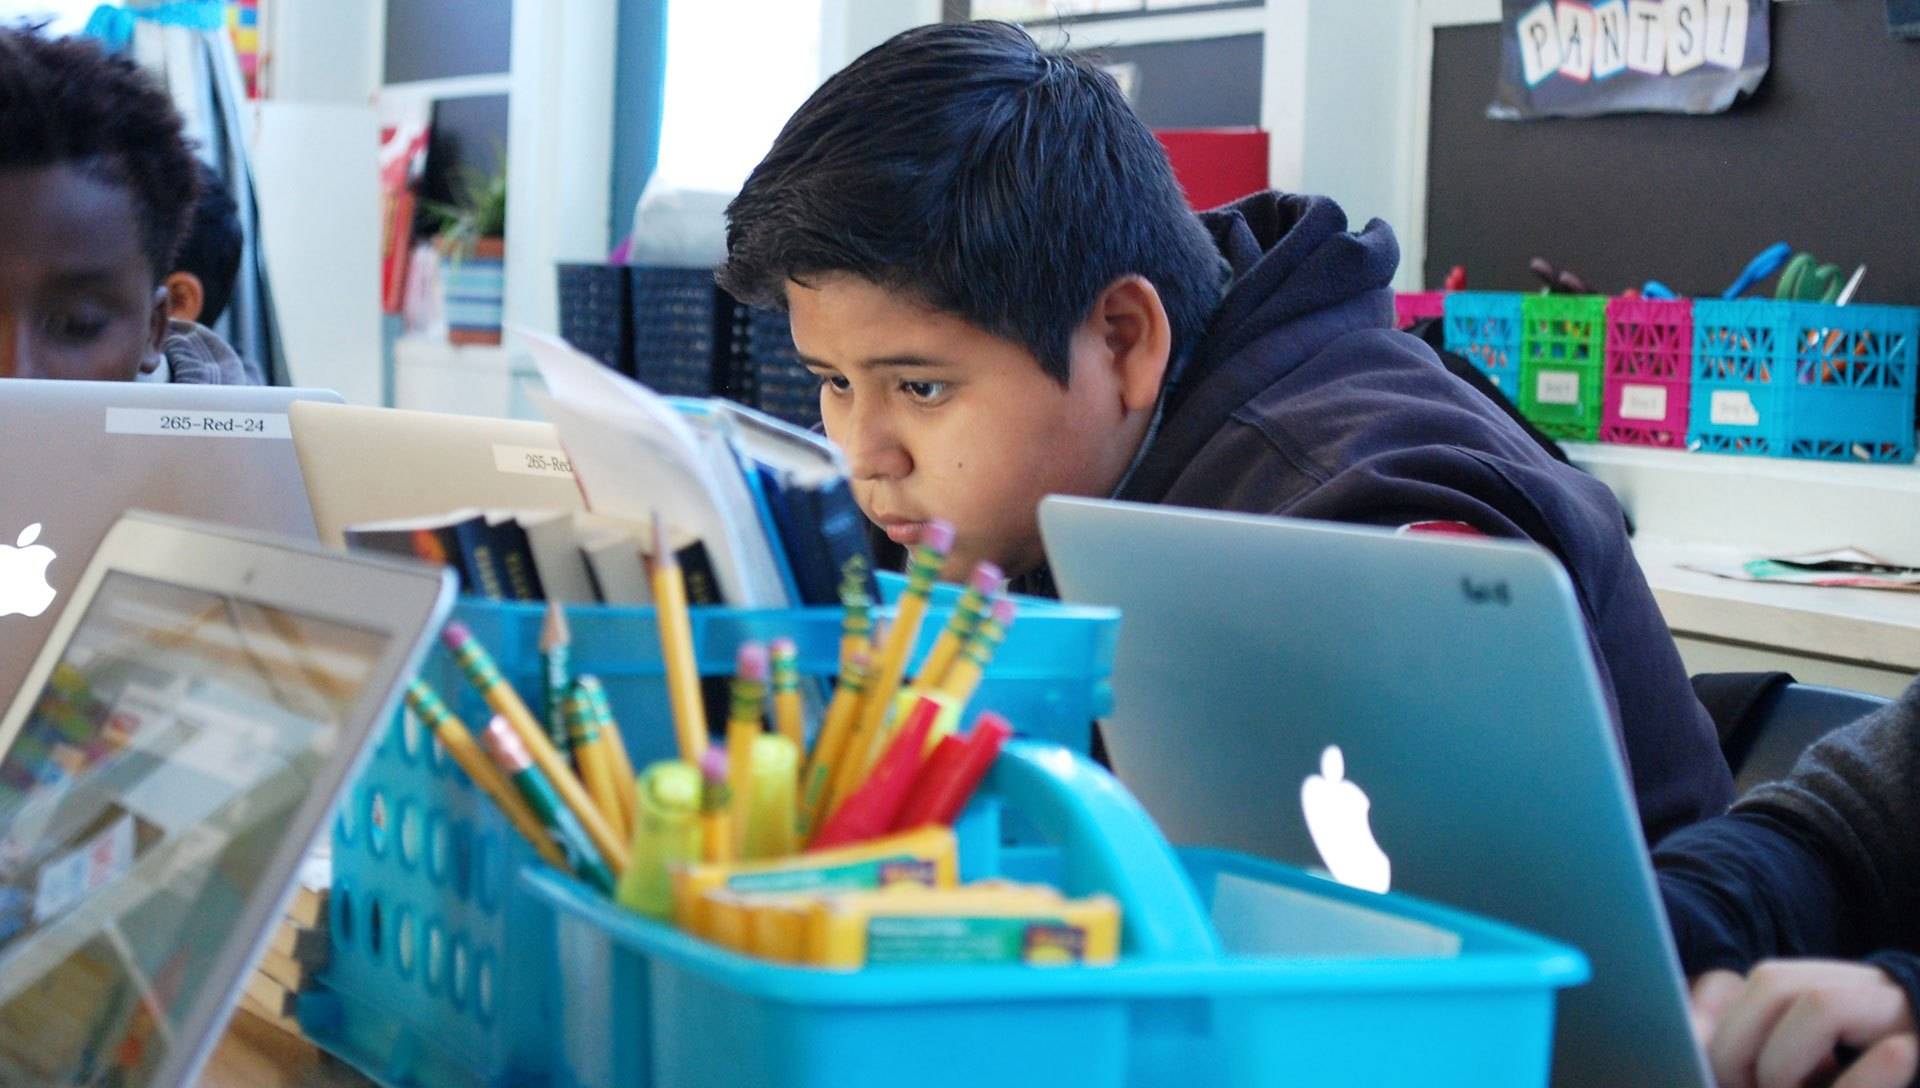 Carlos Delrio, de once años, se dedica a completar una asignación de computación en su clase de sexto grado en la escuela Oak Ridge Elementary en Sacramento. Gabriel Salcedo/KQED